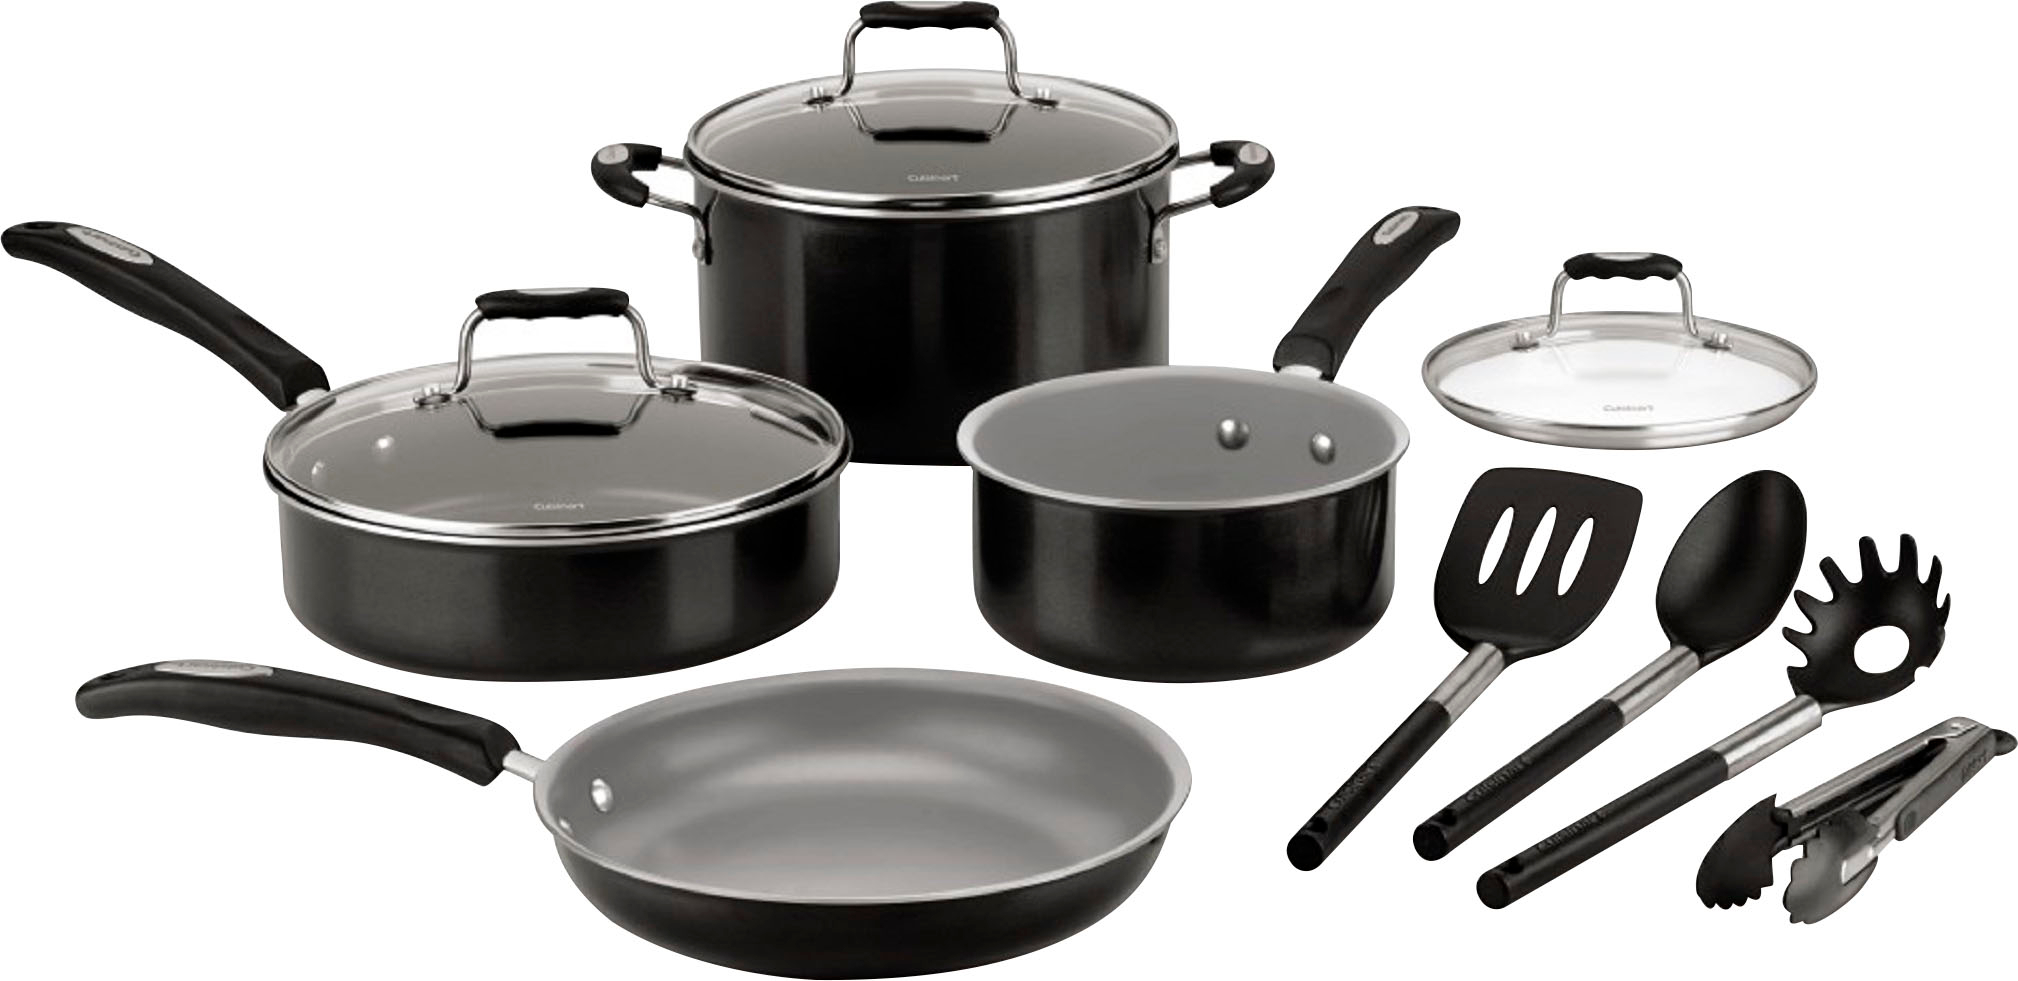 Cuisinart - CeramCuisinart - Ceramic Nonstick 11 PC Cookware Set - Blackic Nonstick 11 PC Cookware Set - Black $59.99